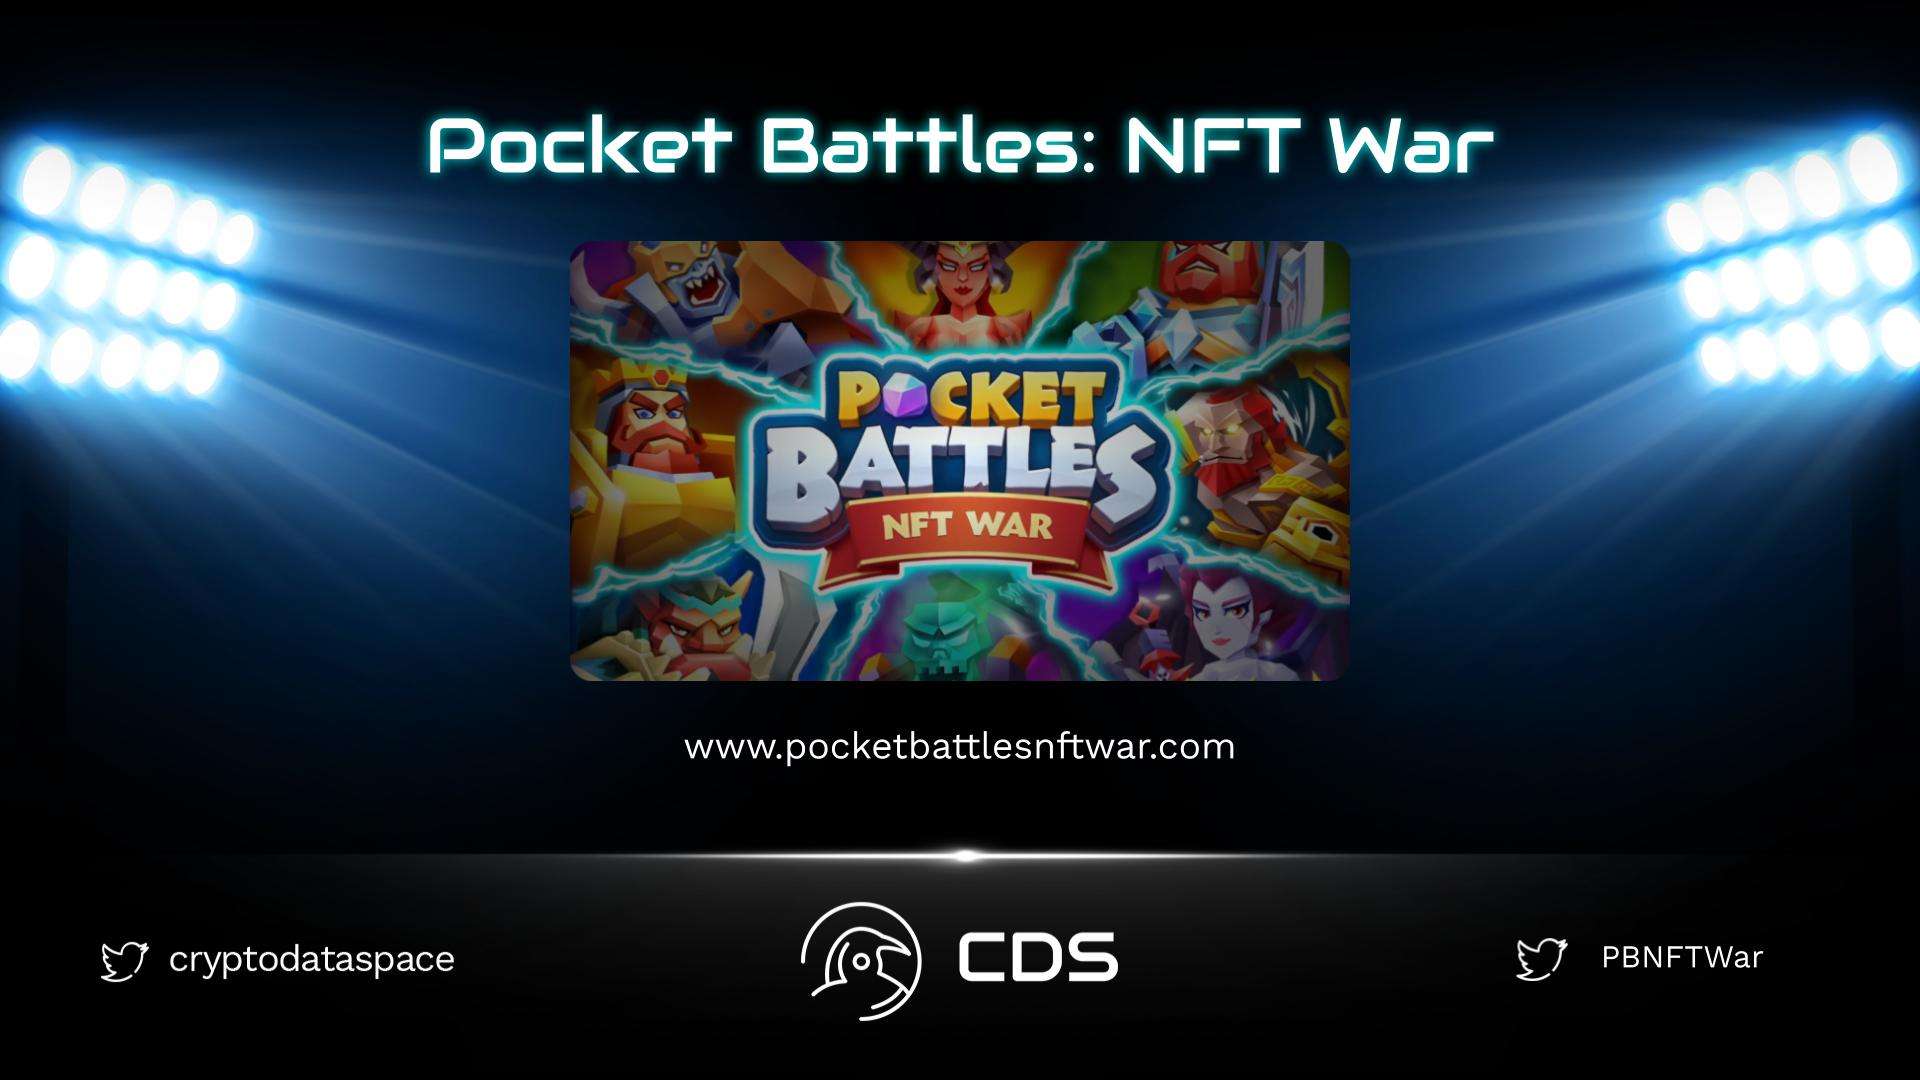 Pocket Battles NFT War